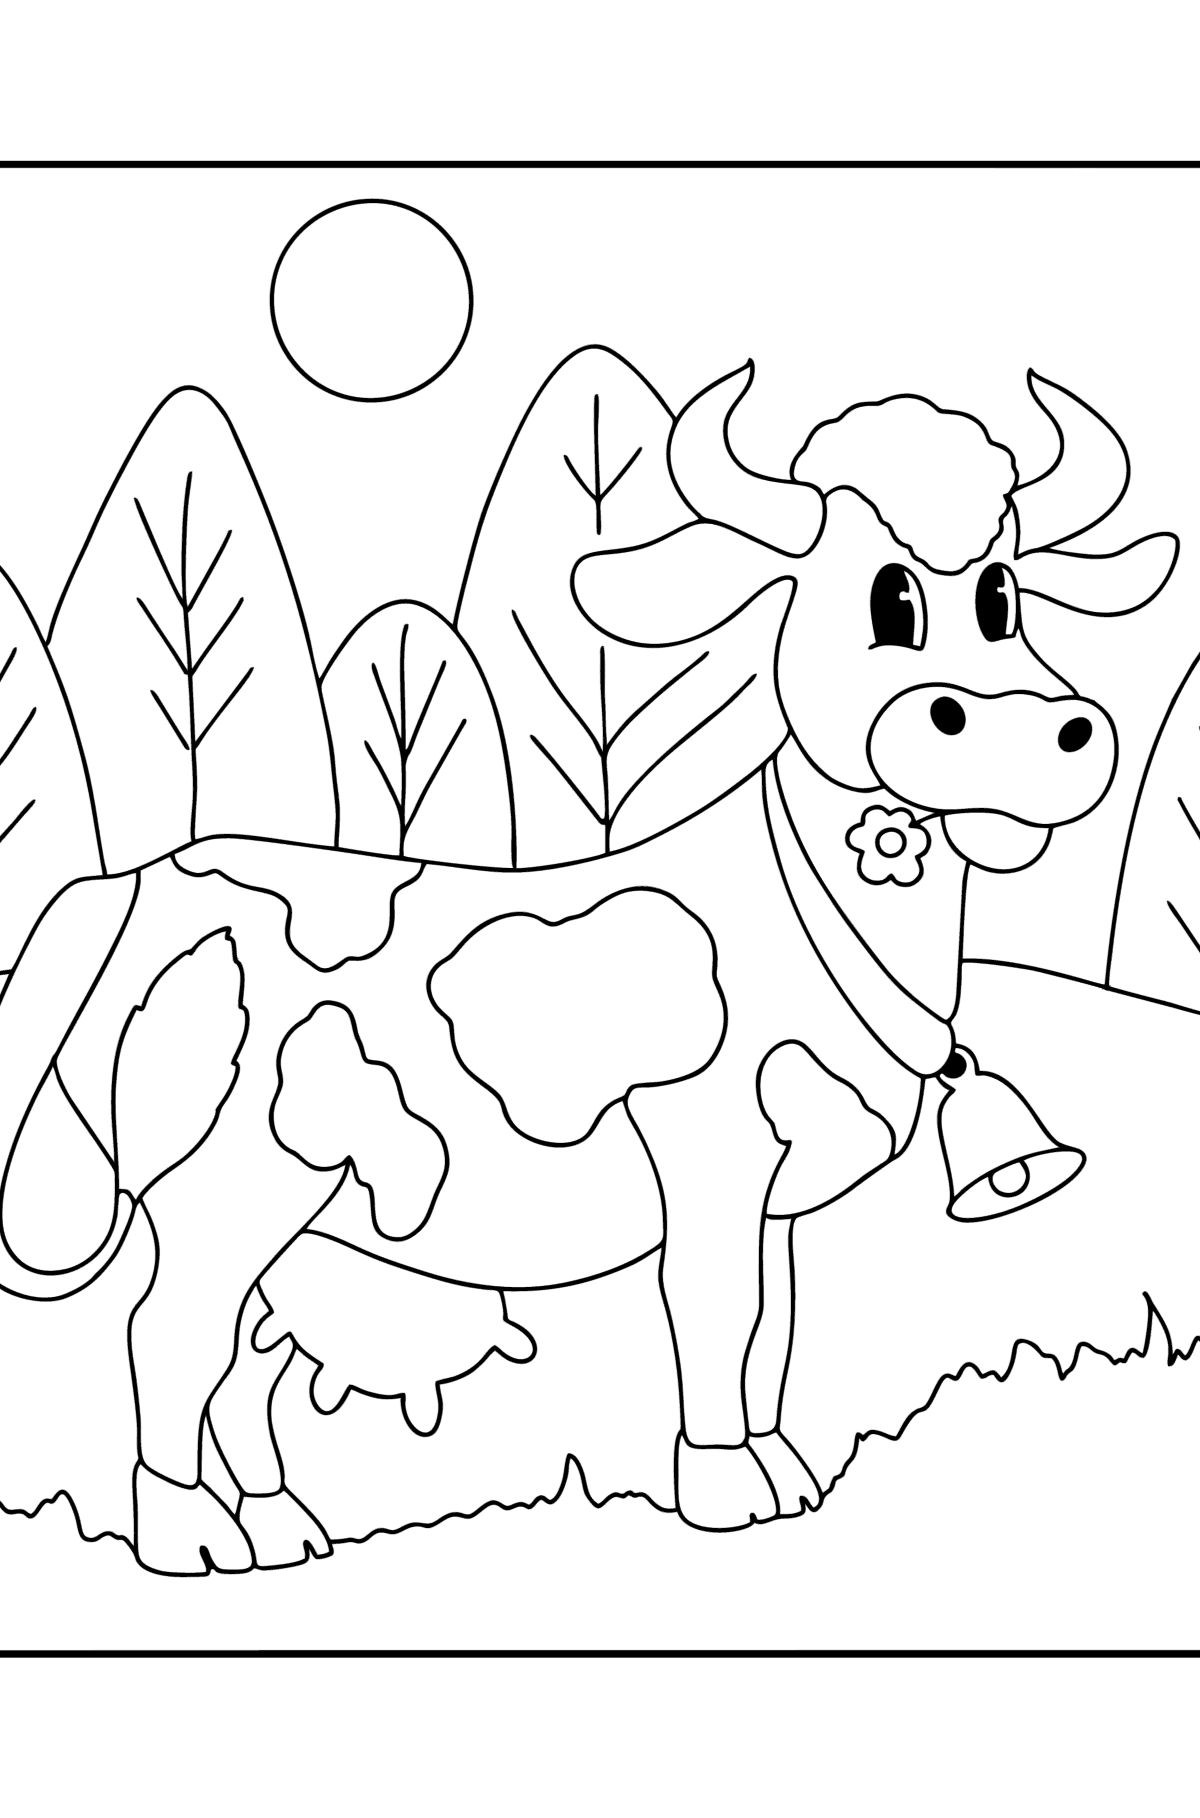 Раскраска рисунок коровы для малышей - Картинки для Детей